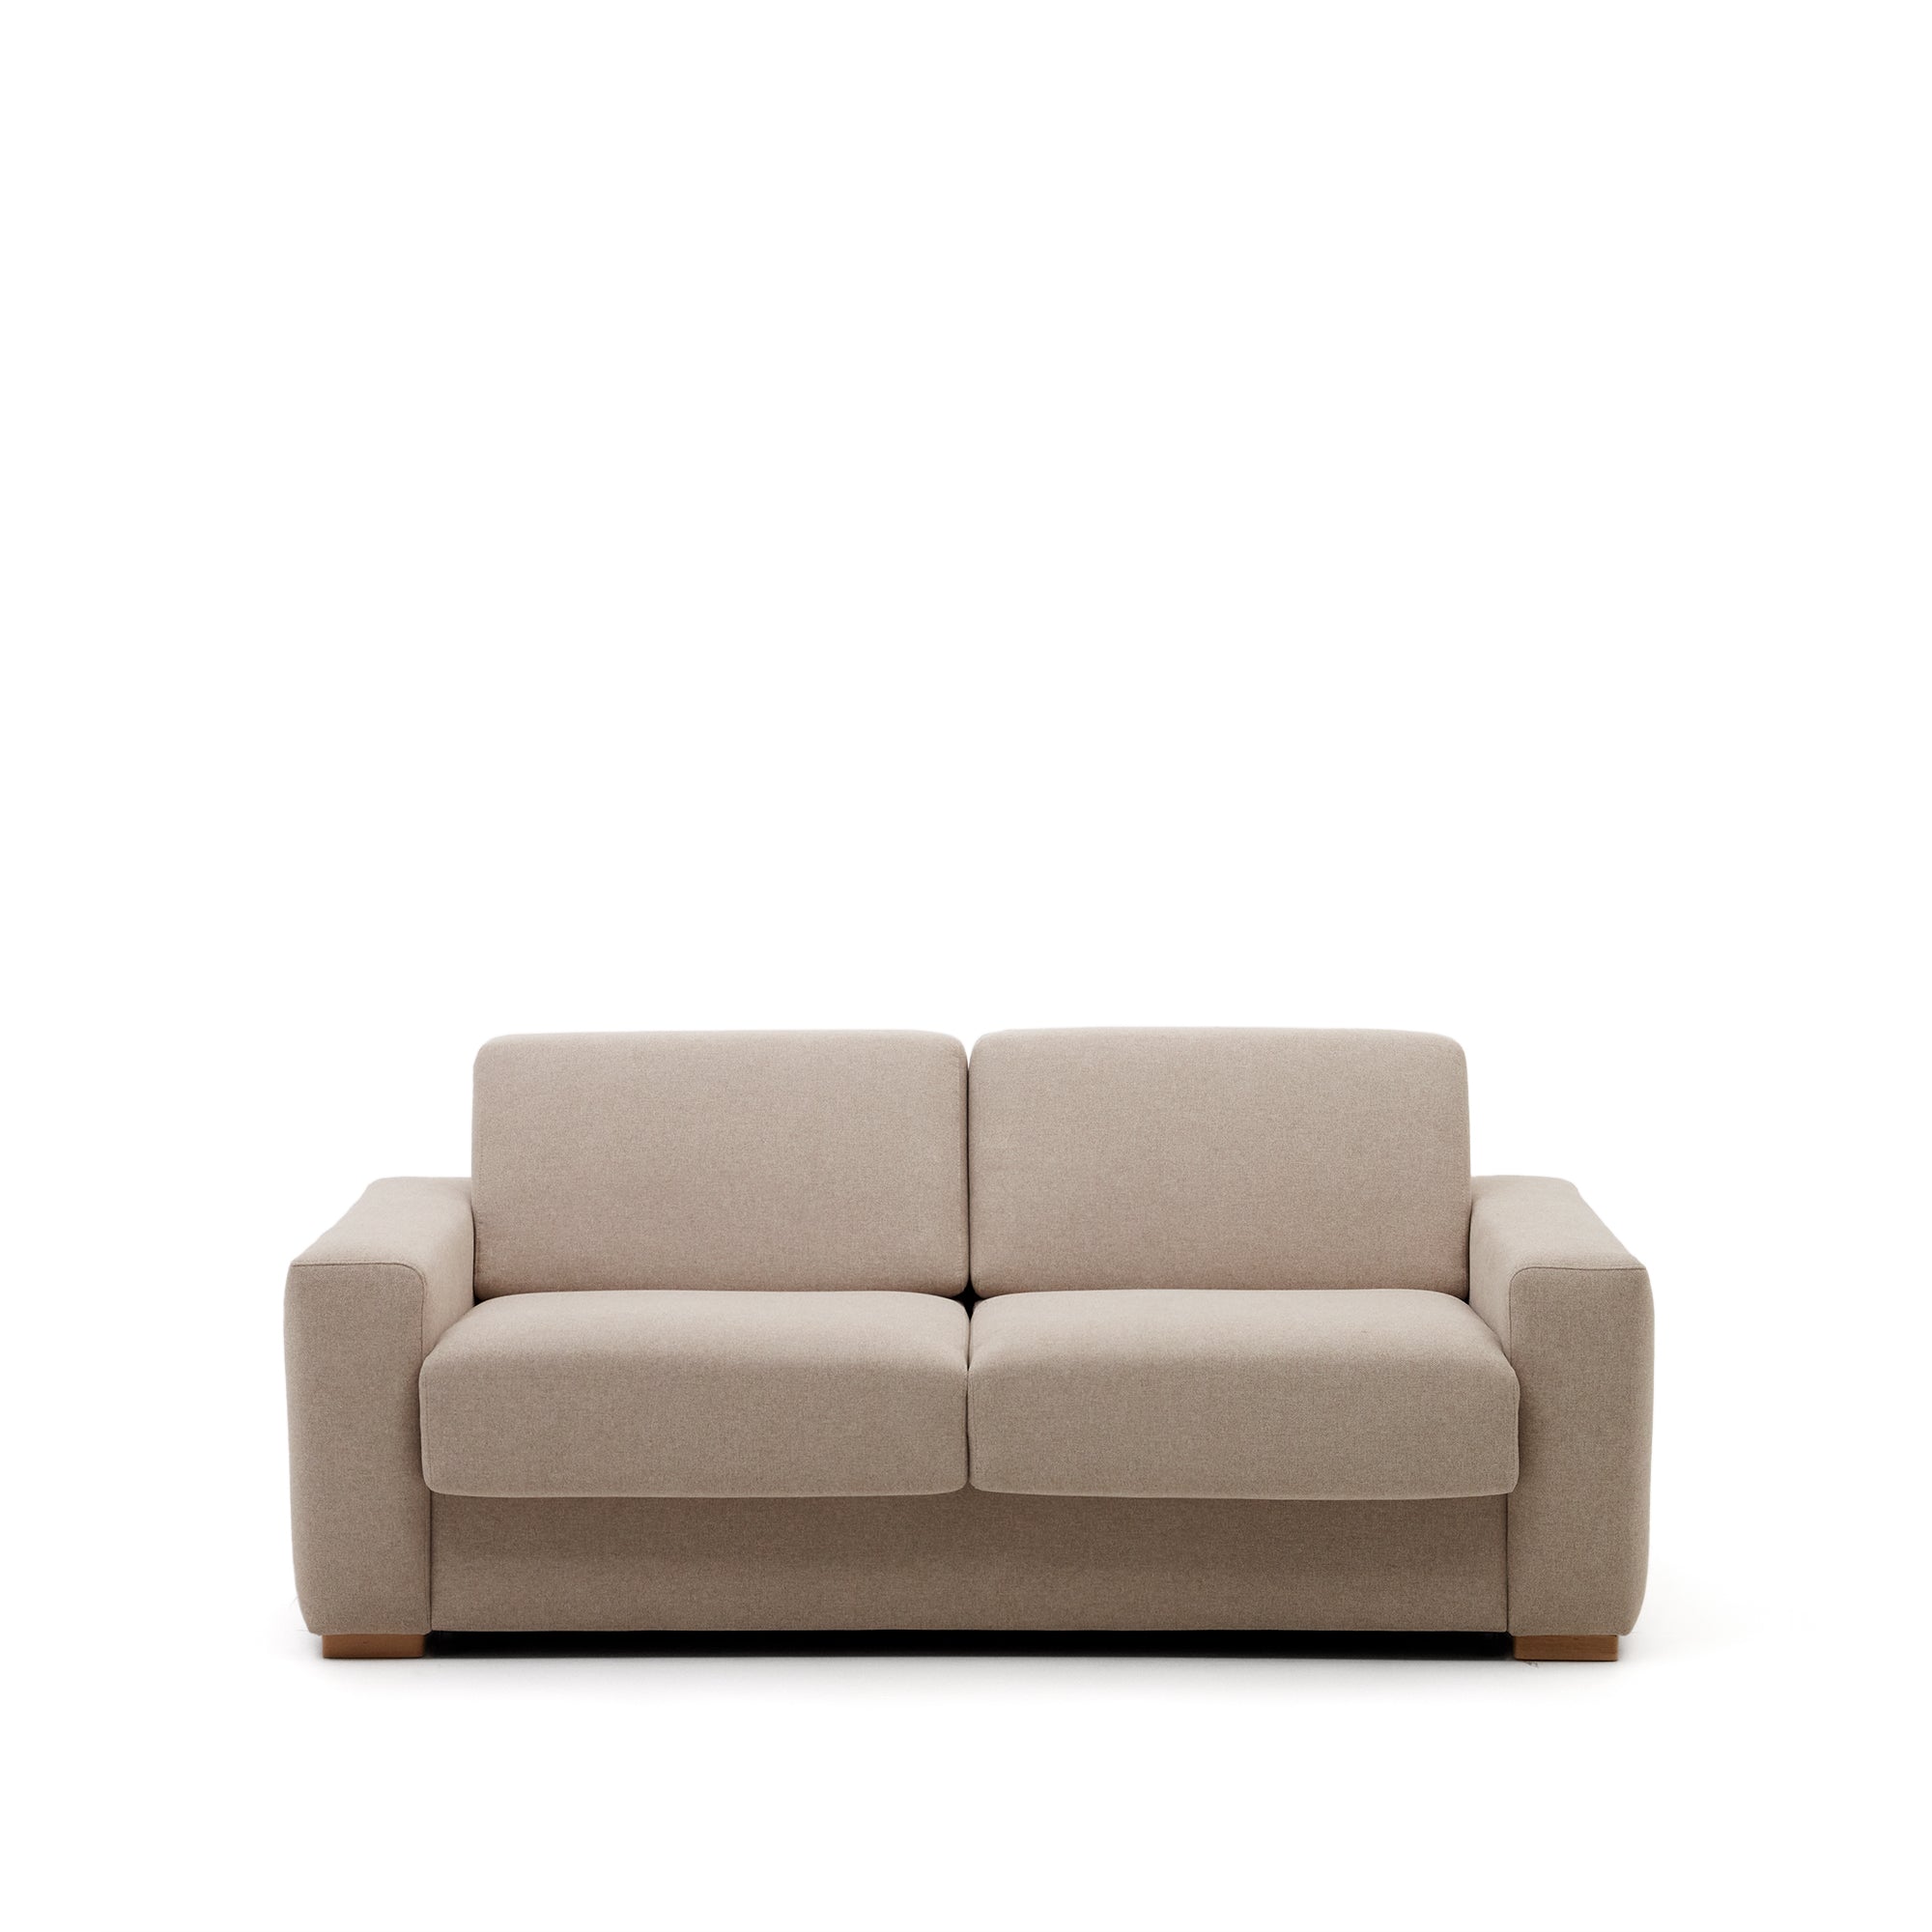 Anley 3 személyes kanapéágy bézs színben 244 cm